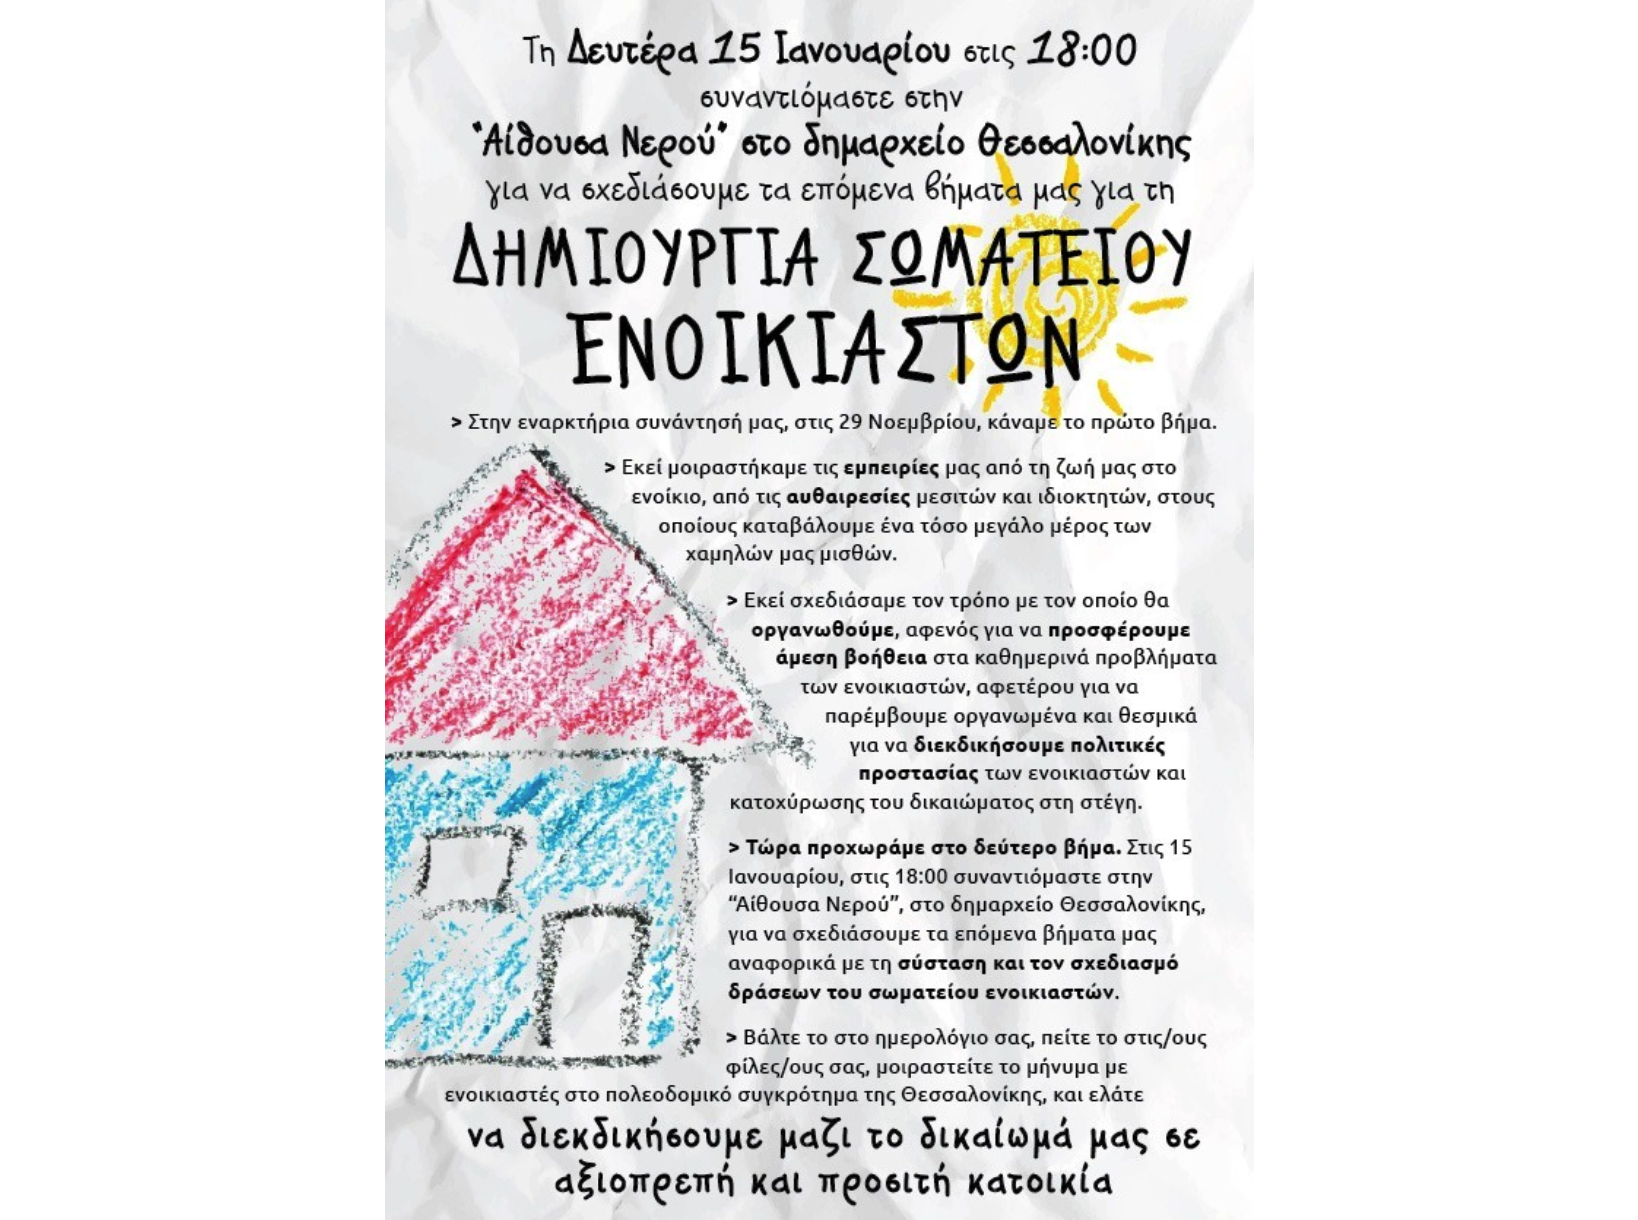 Δημιουργία σωματείου ενοικιαστών στην Θεσσαλονίκη